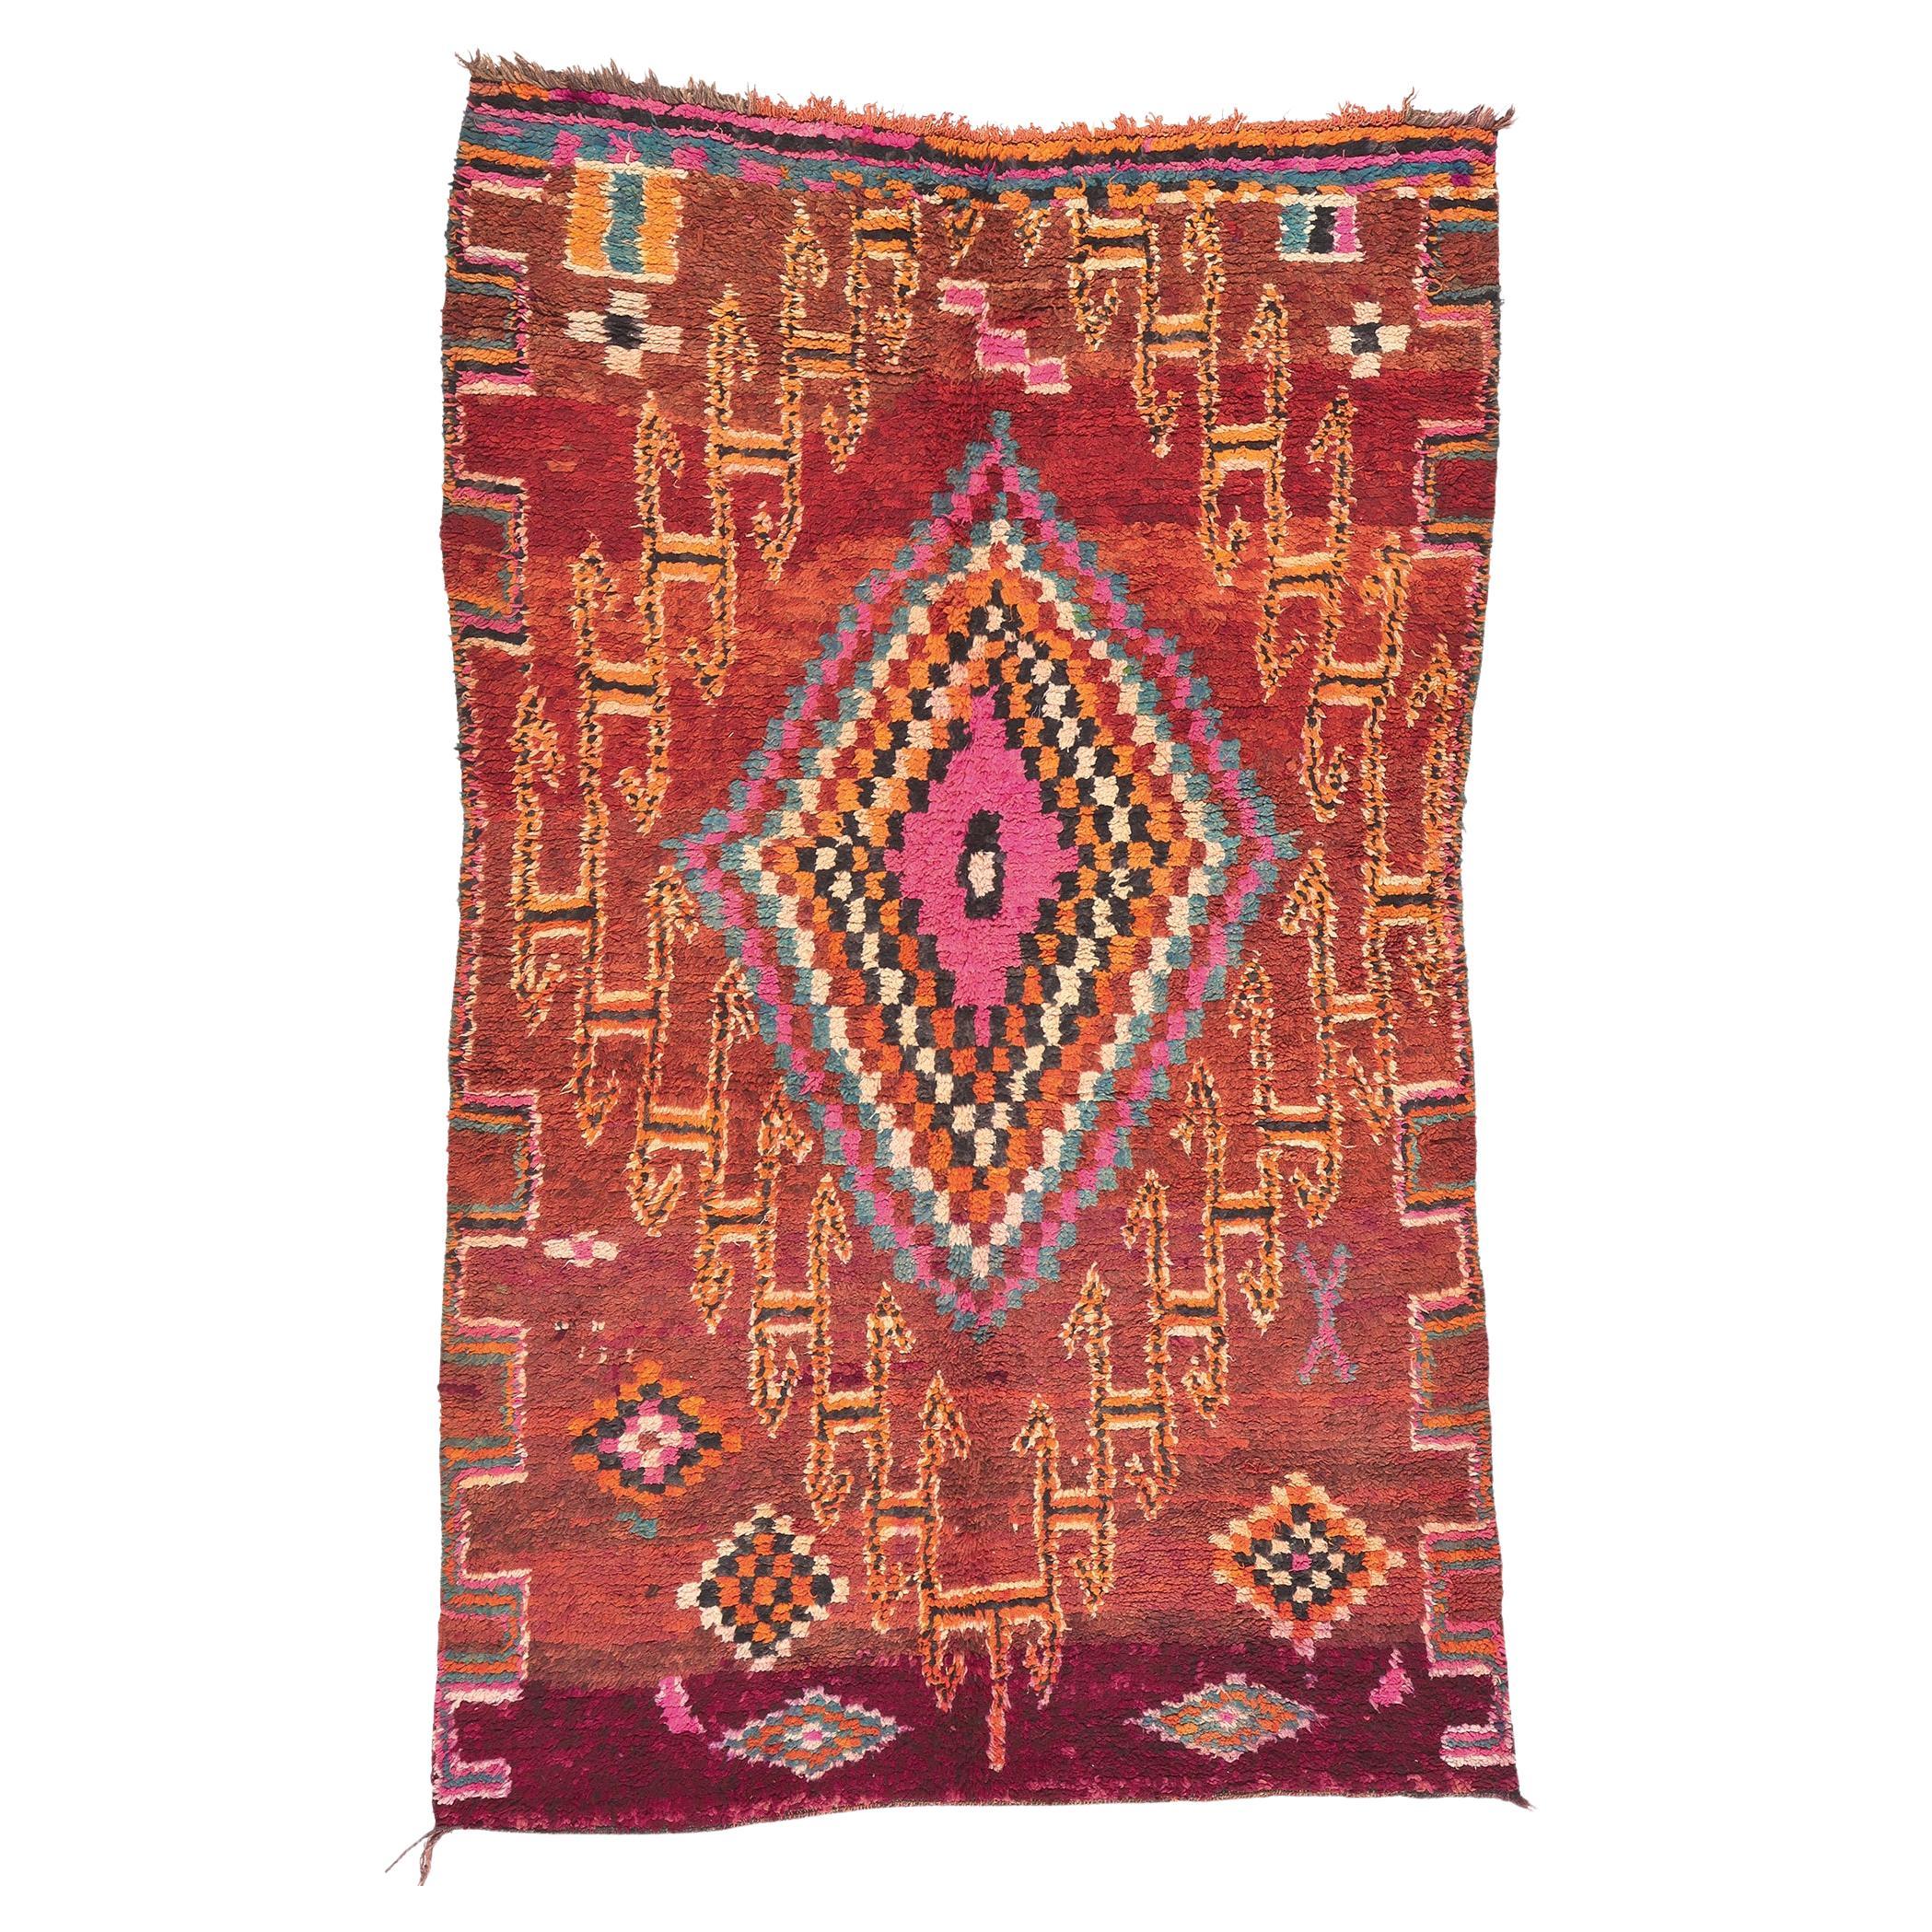 Marokkanischer Boujad-Teppich im Vintage-Stil, Stammeskunst-Enchantment trifft auf Boho Jungalow